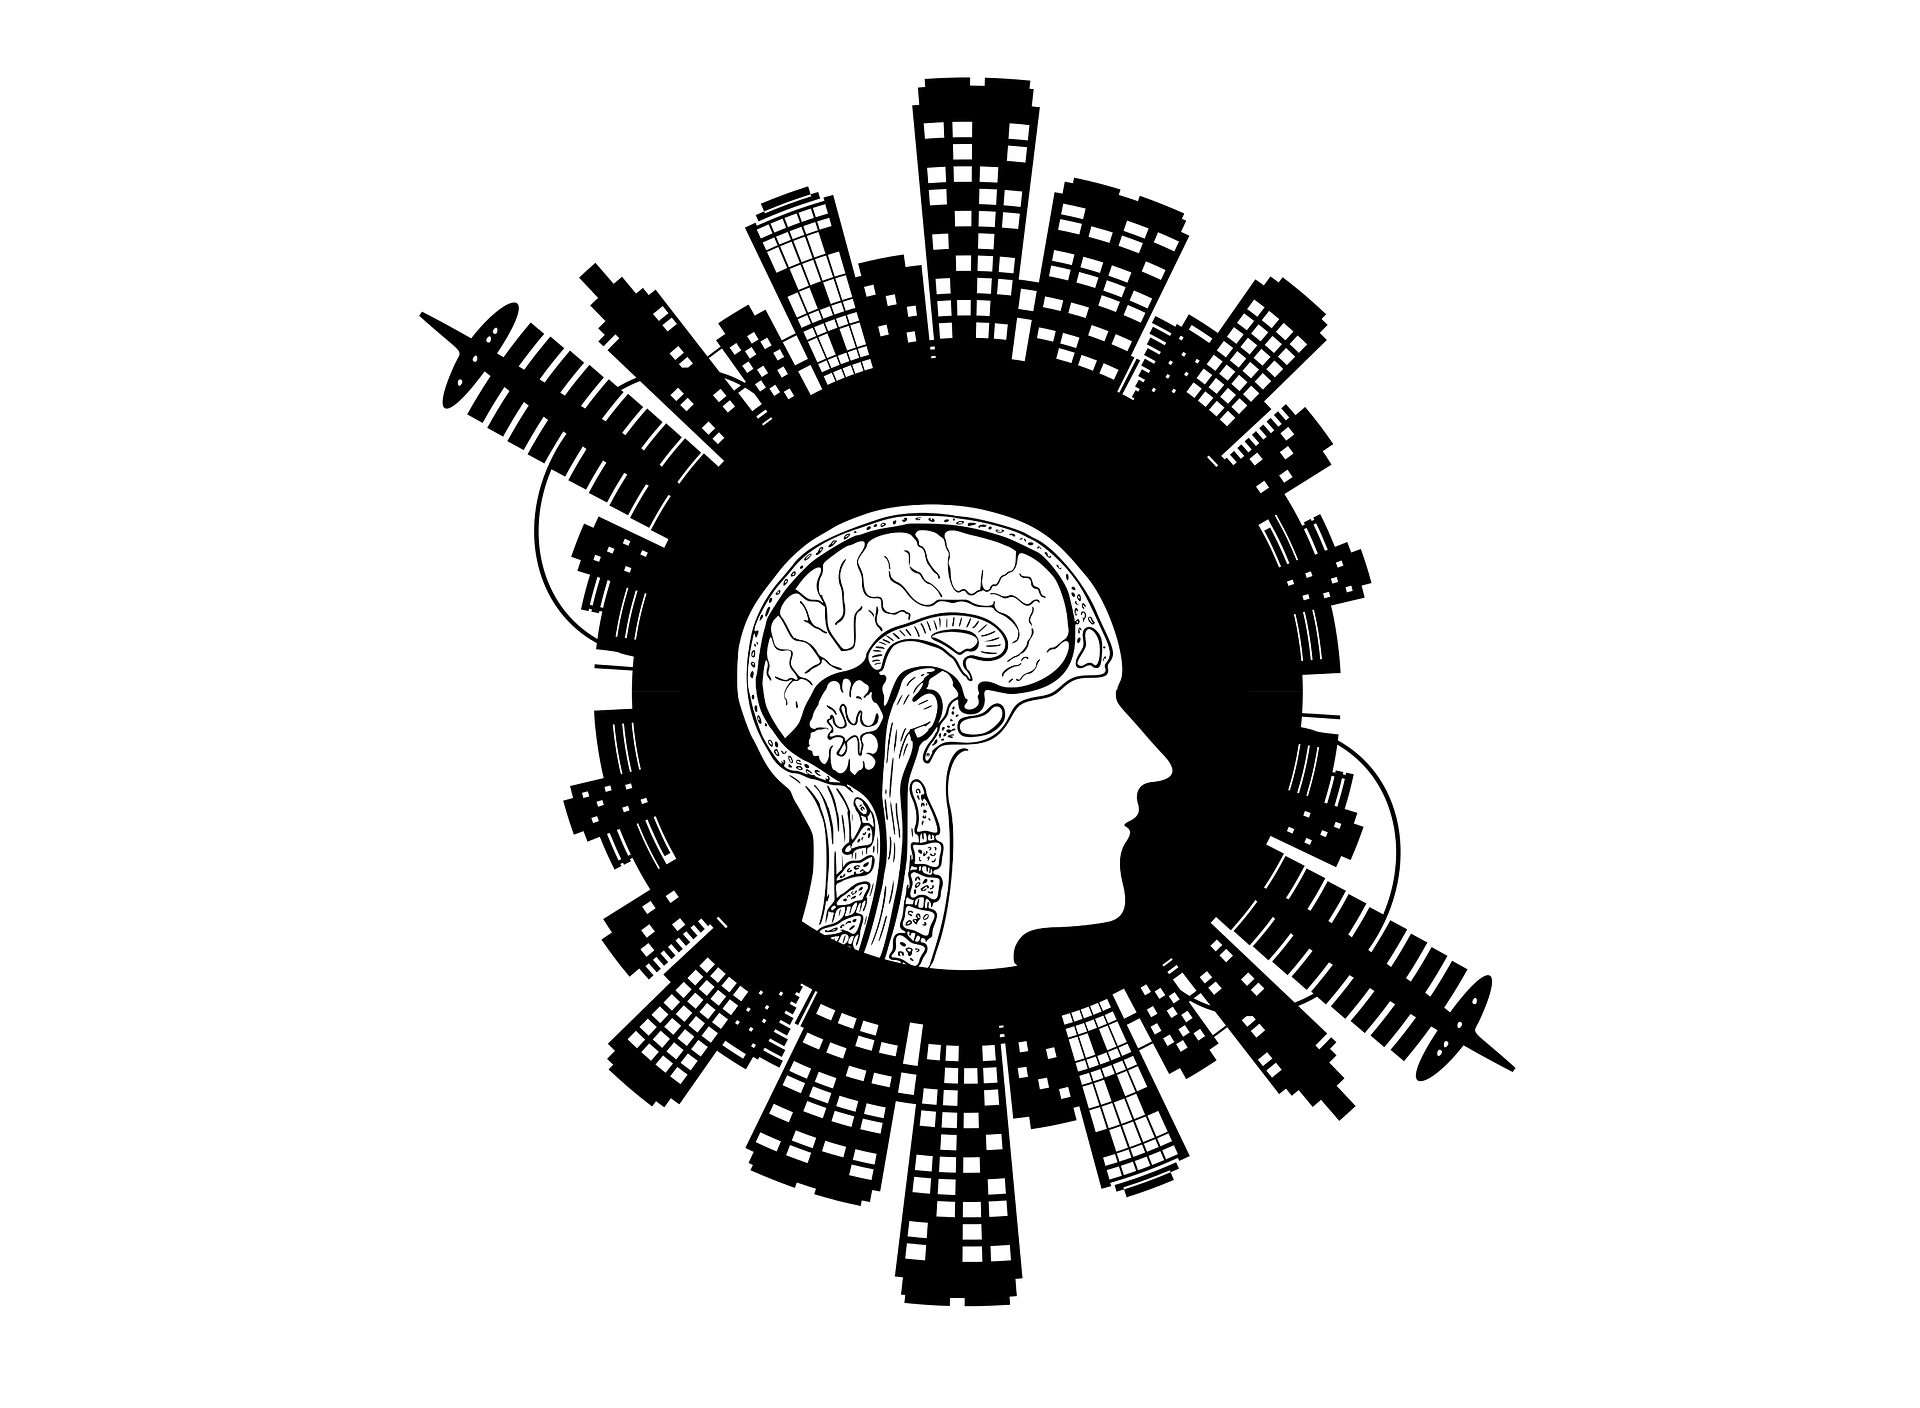 obrazek przedstawia głowę otoczoną budynkami